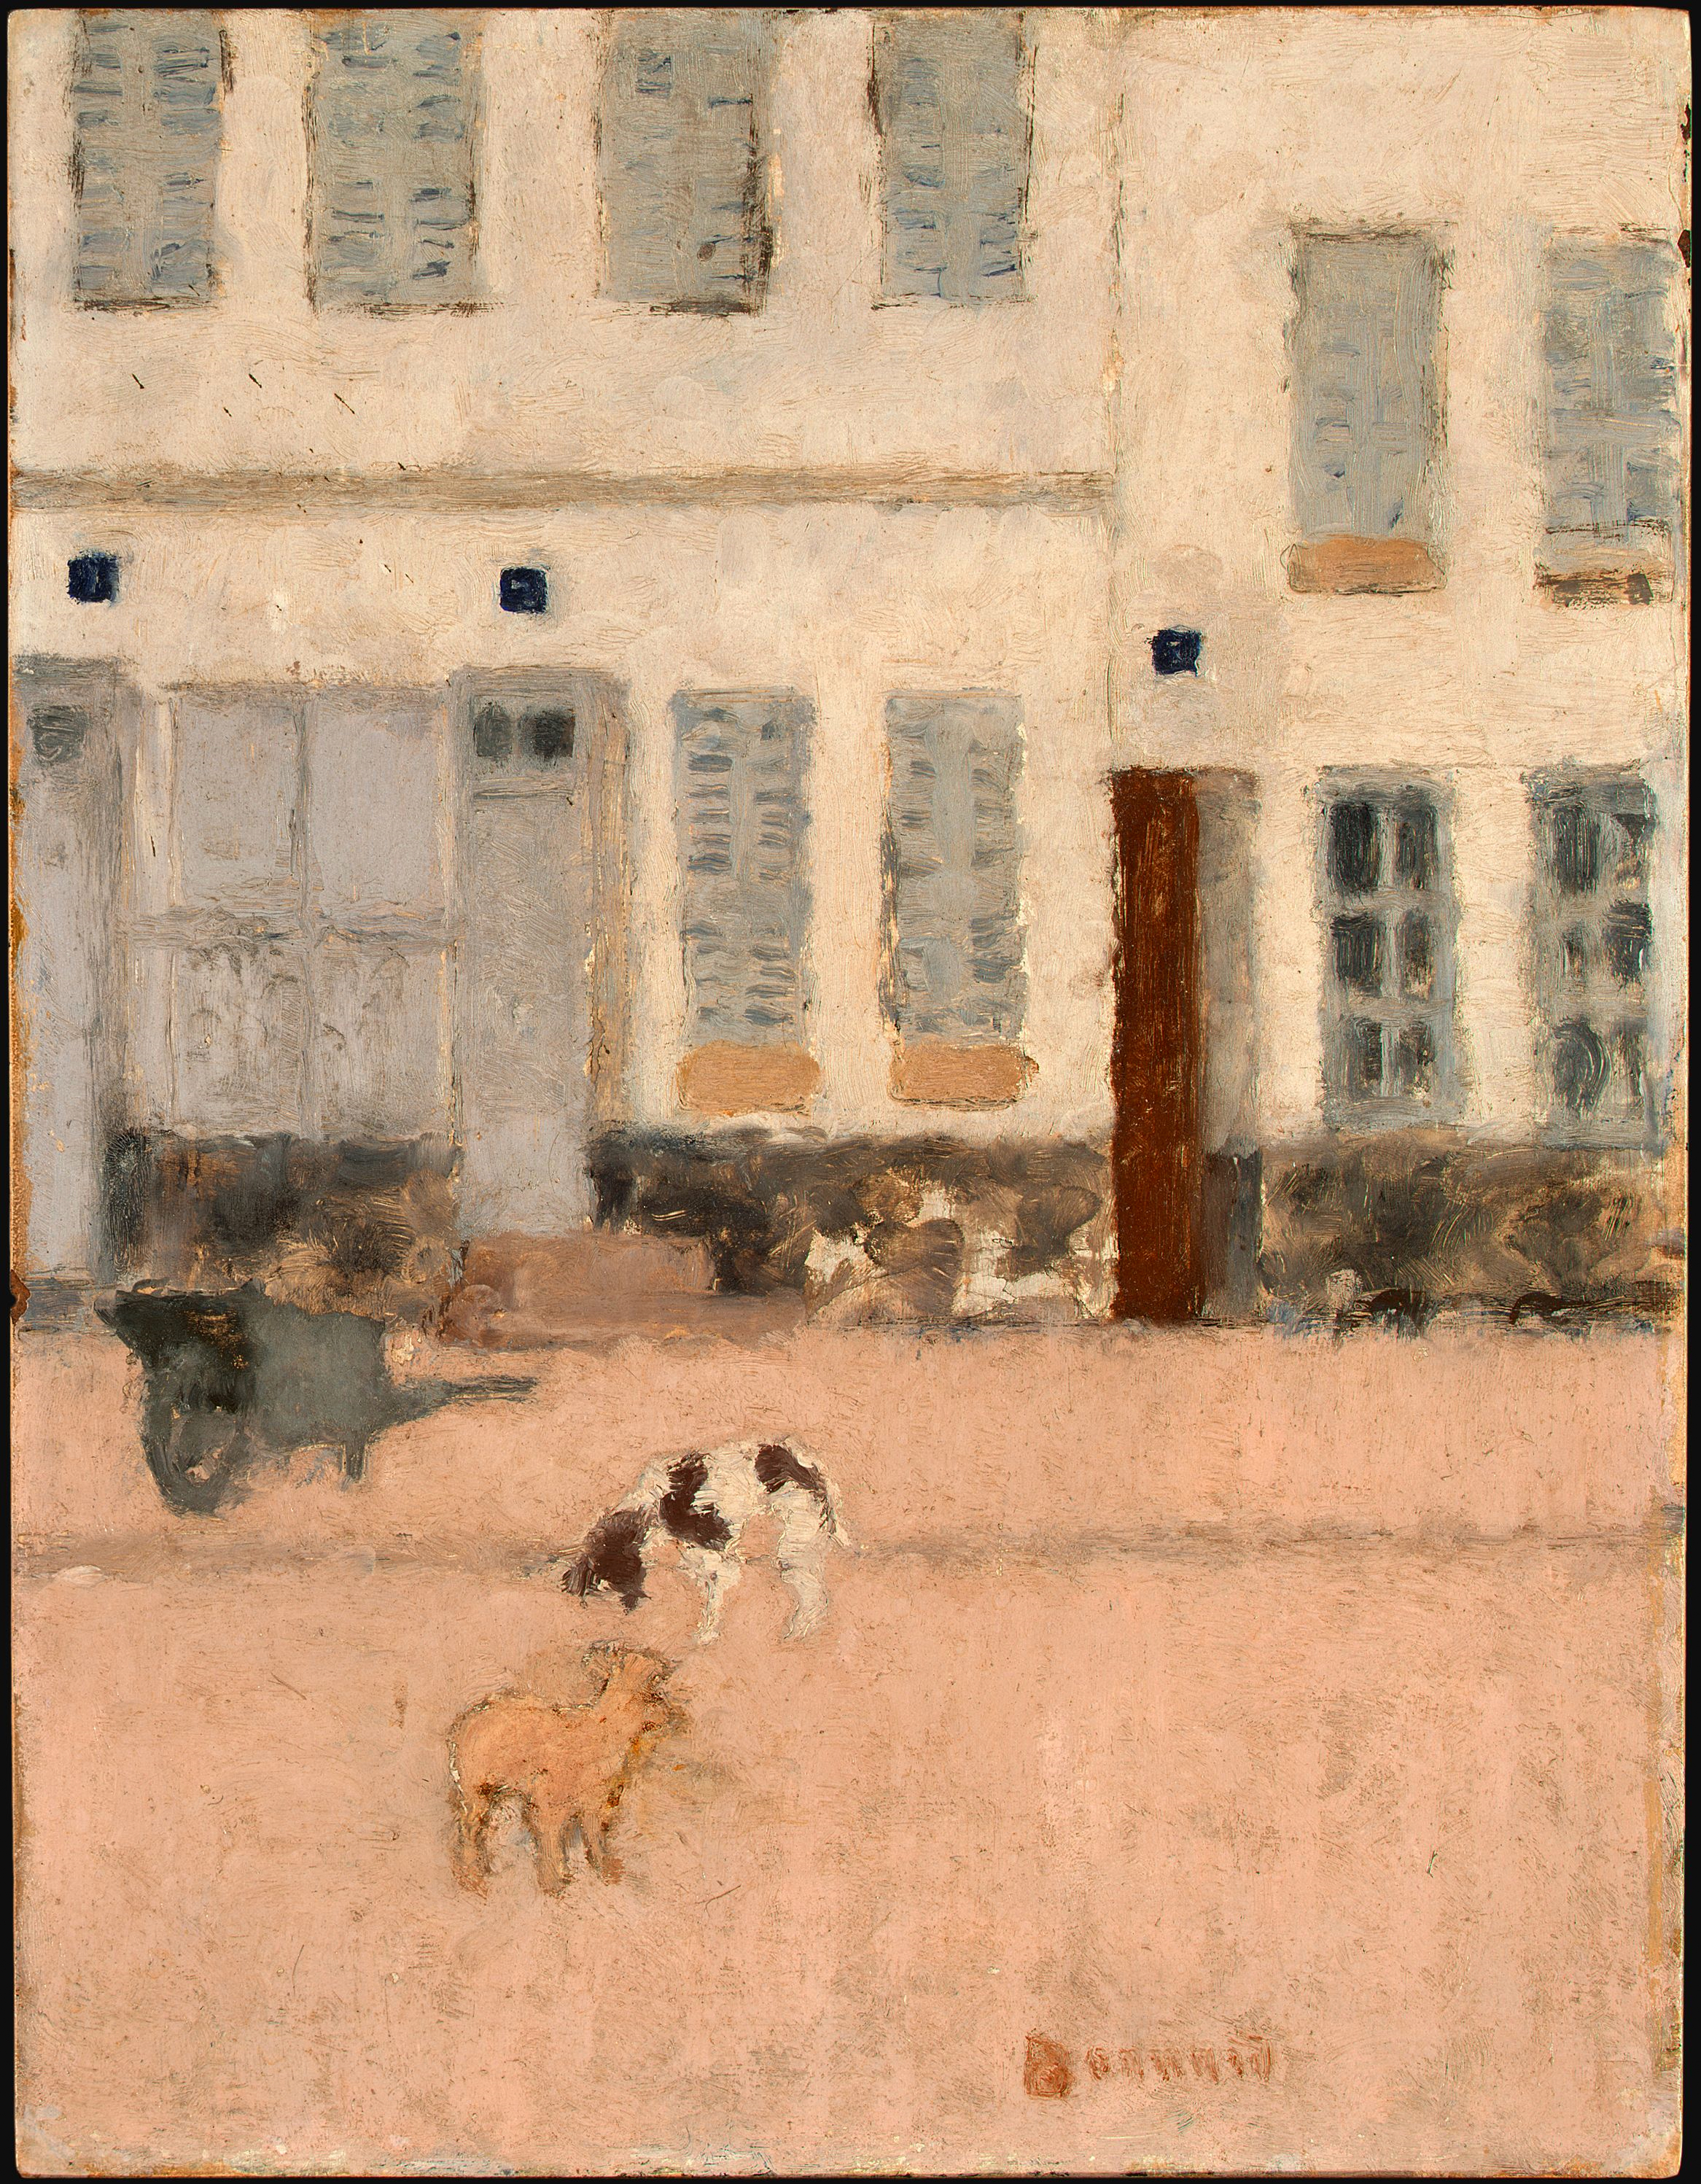 한산한 거리에 개 두 마리(Two Dogs in a Deserted Street) by Pierre Bonnard - 약 1894년 - 35.1 x 27 cm 